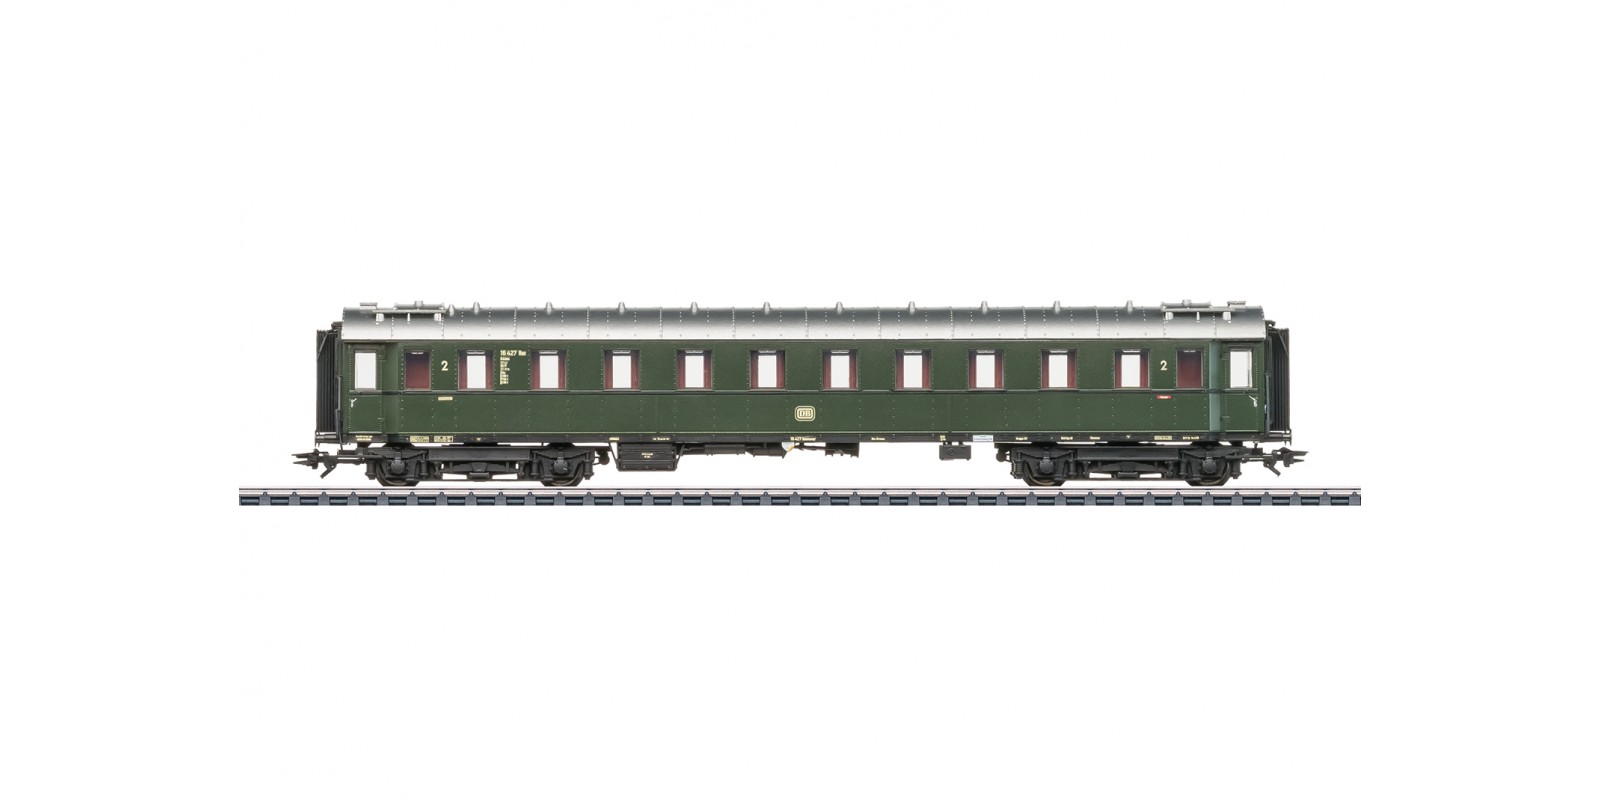 42520 Type B4üwe Express Train Passenger Car, 2nd Class